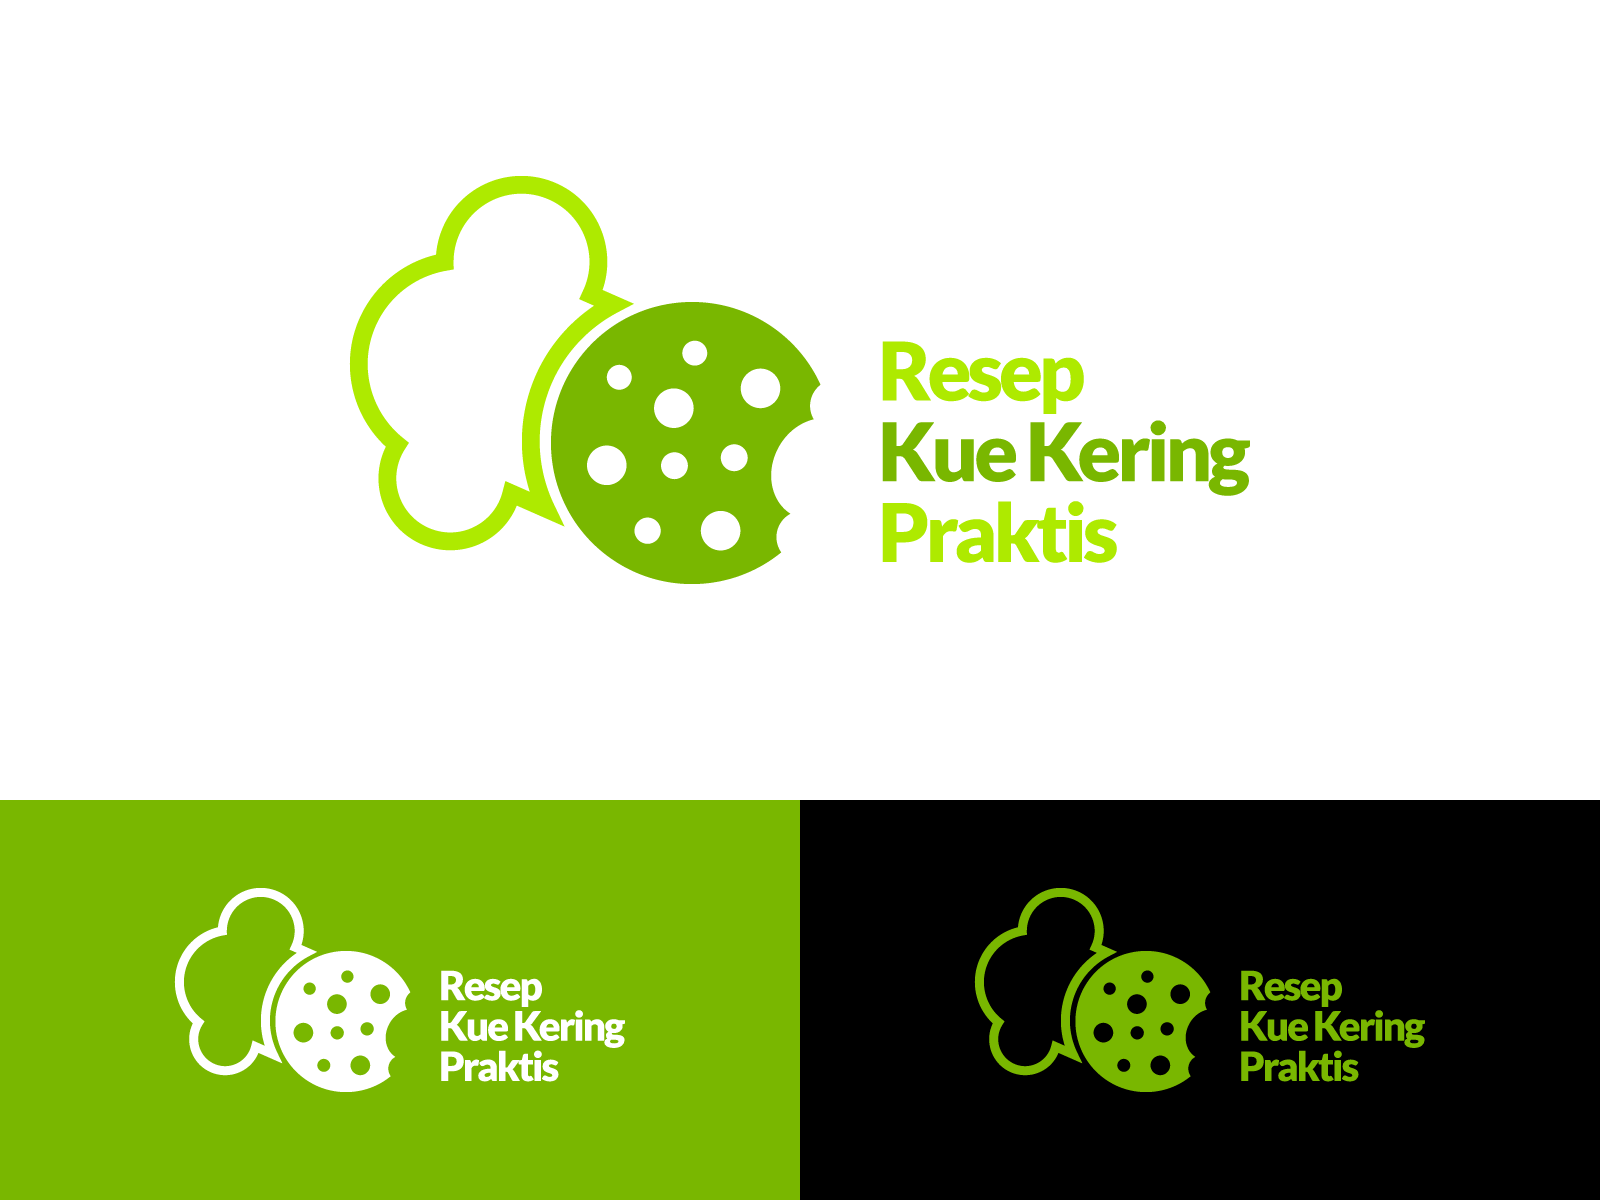 Resep Kue Kering Praktis Logo Design by Anhar Ismail on 